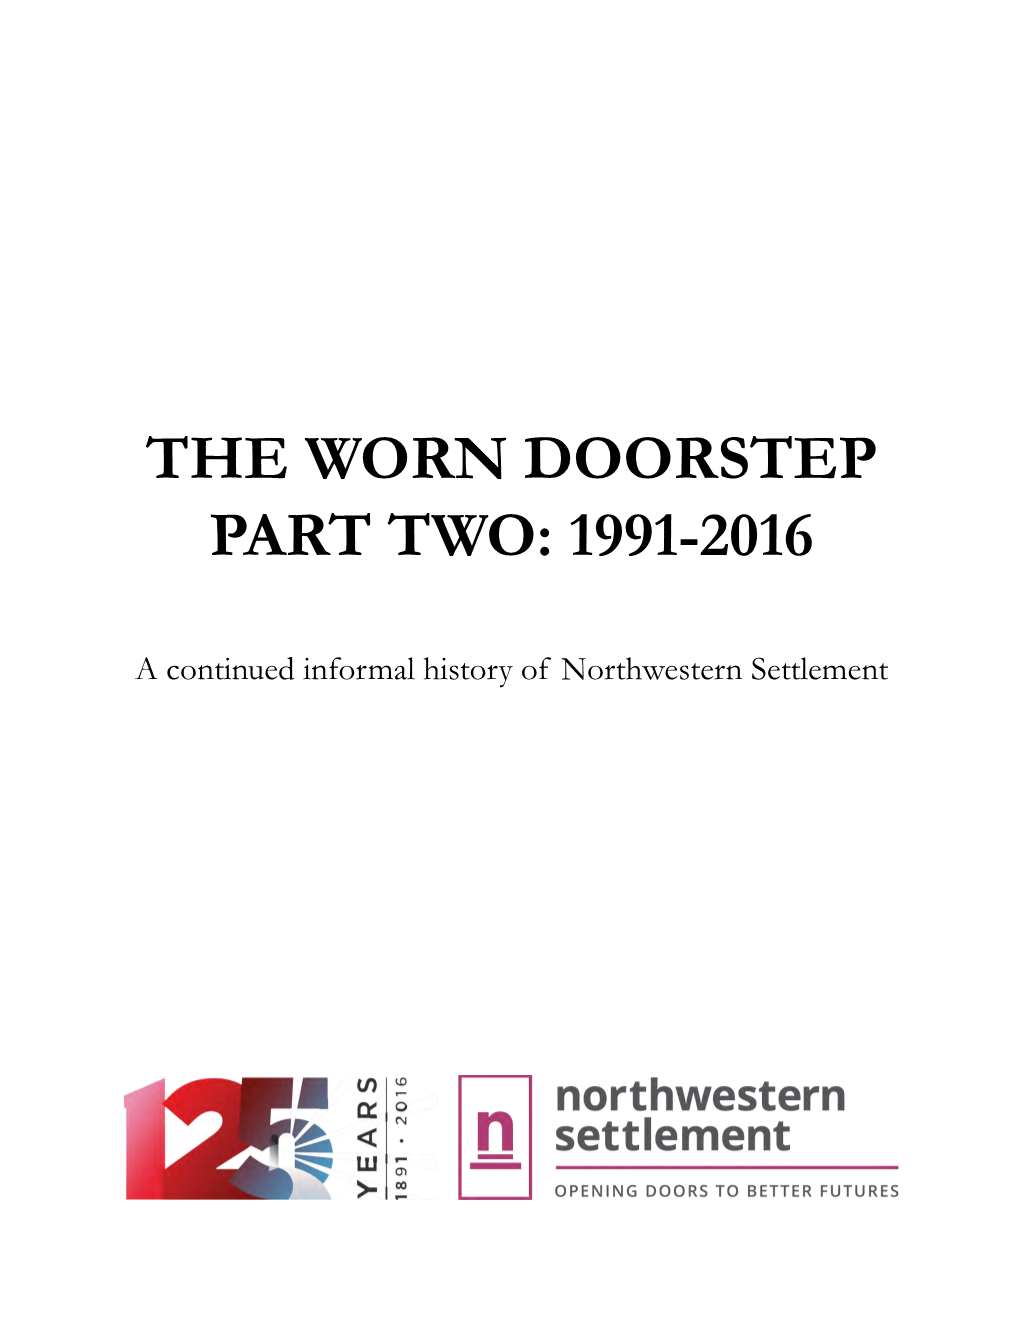 The Worn Doorstep Part Two: 1991-2016